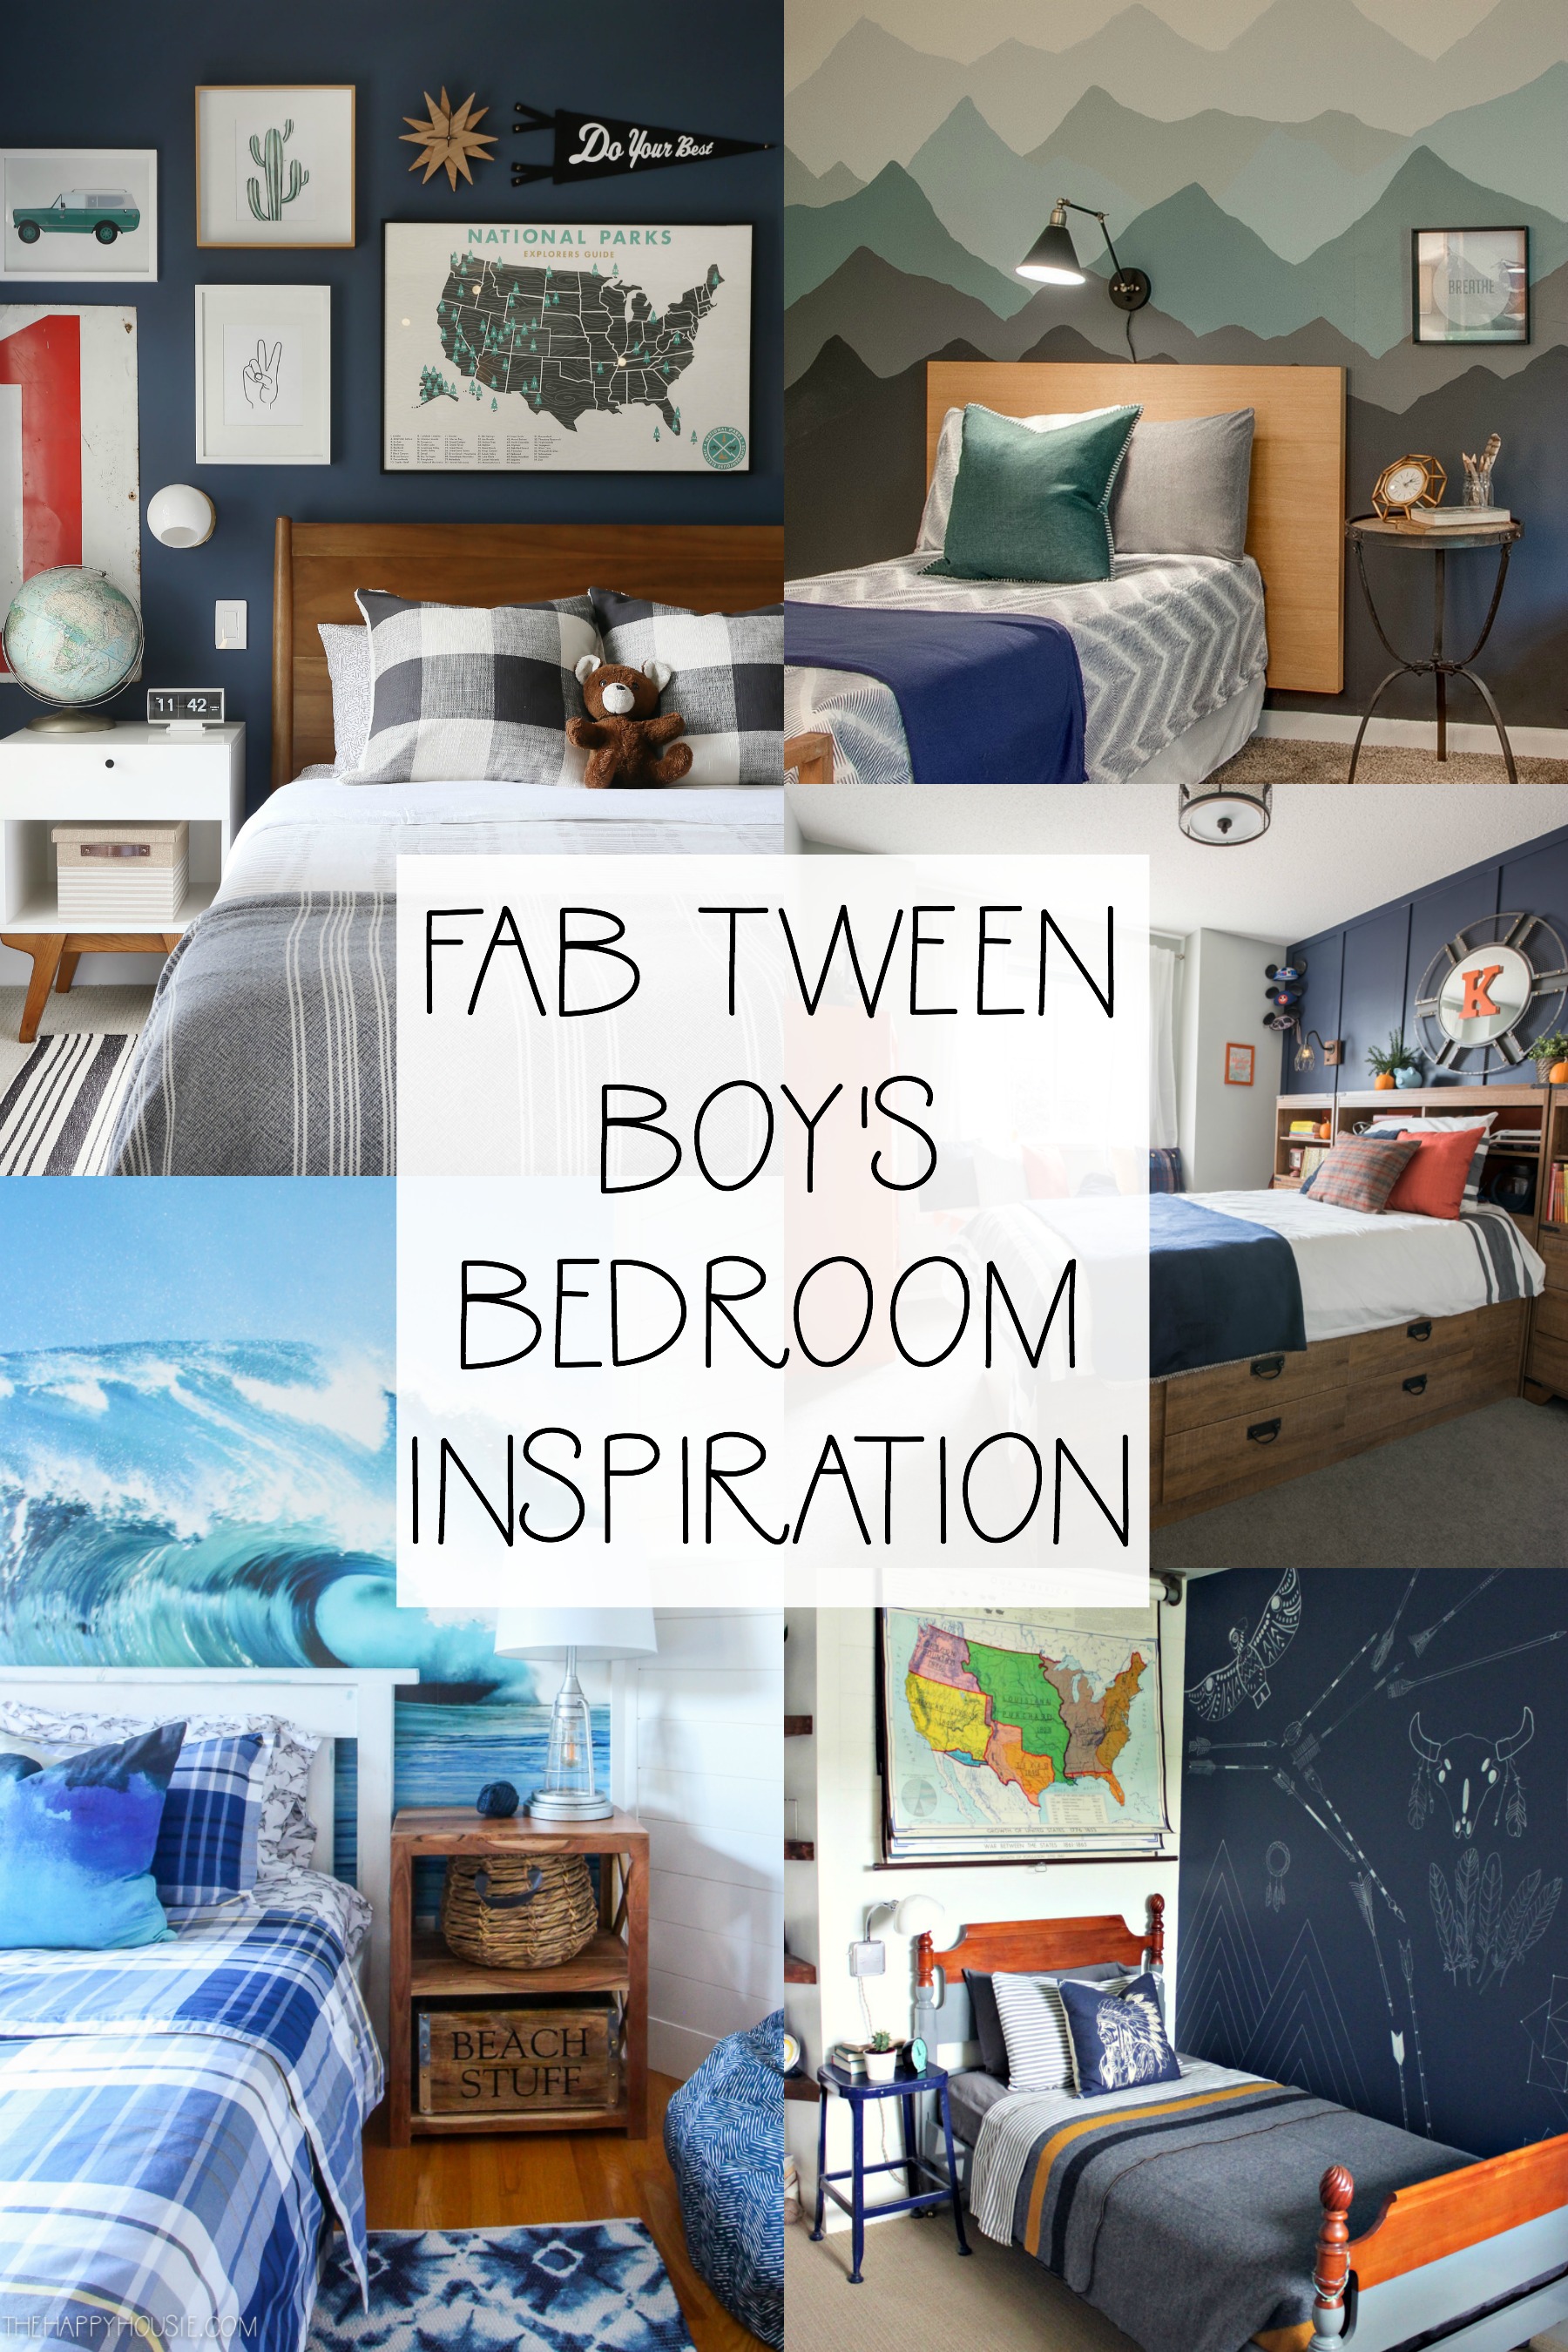 Fab Tween Boy's Bedroom Inspiration poster.